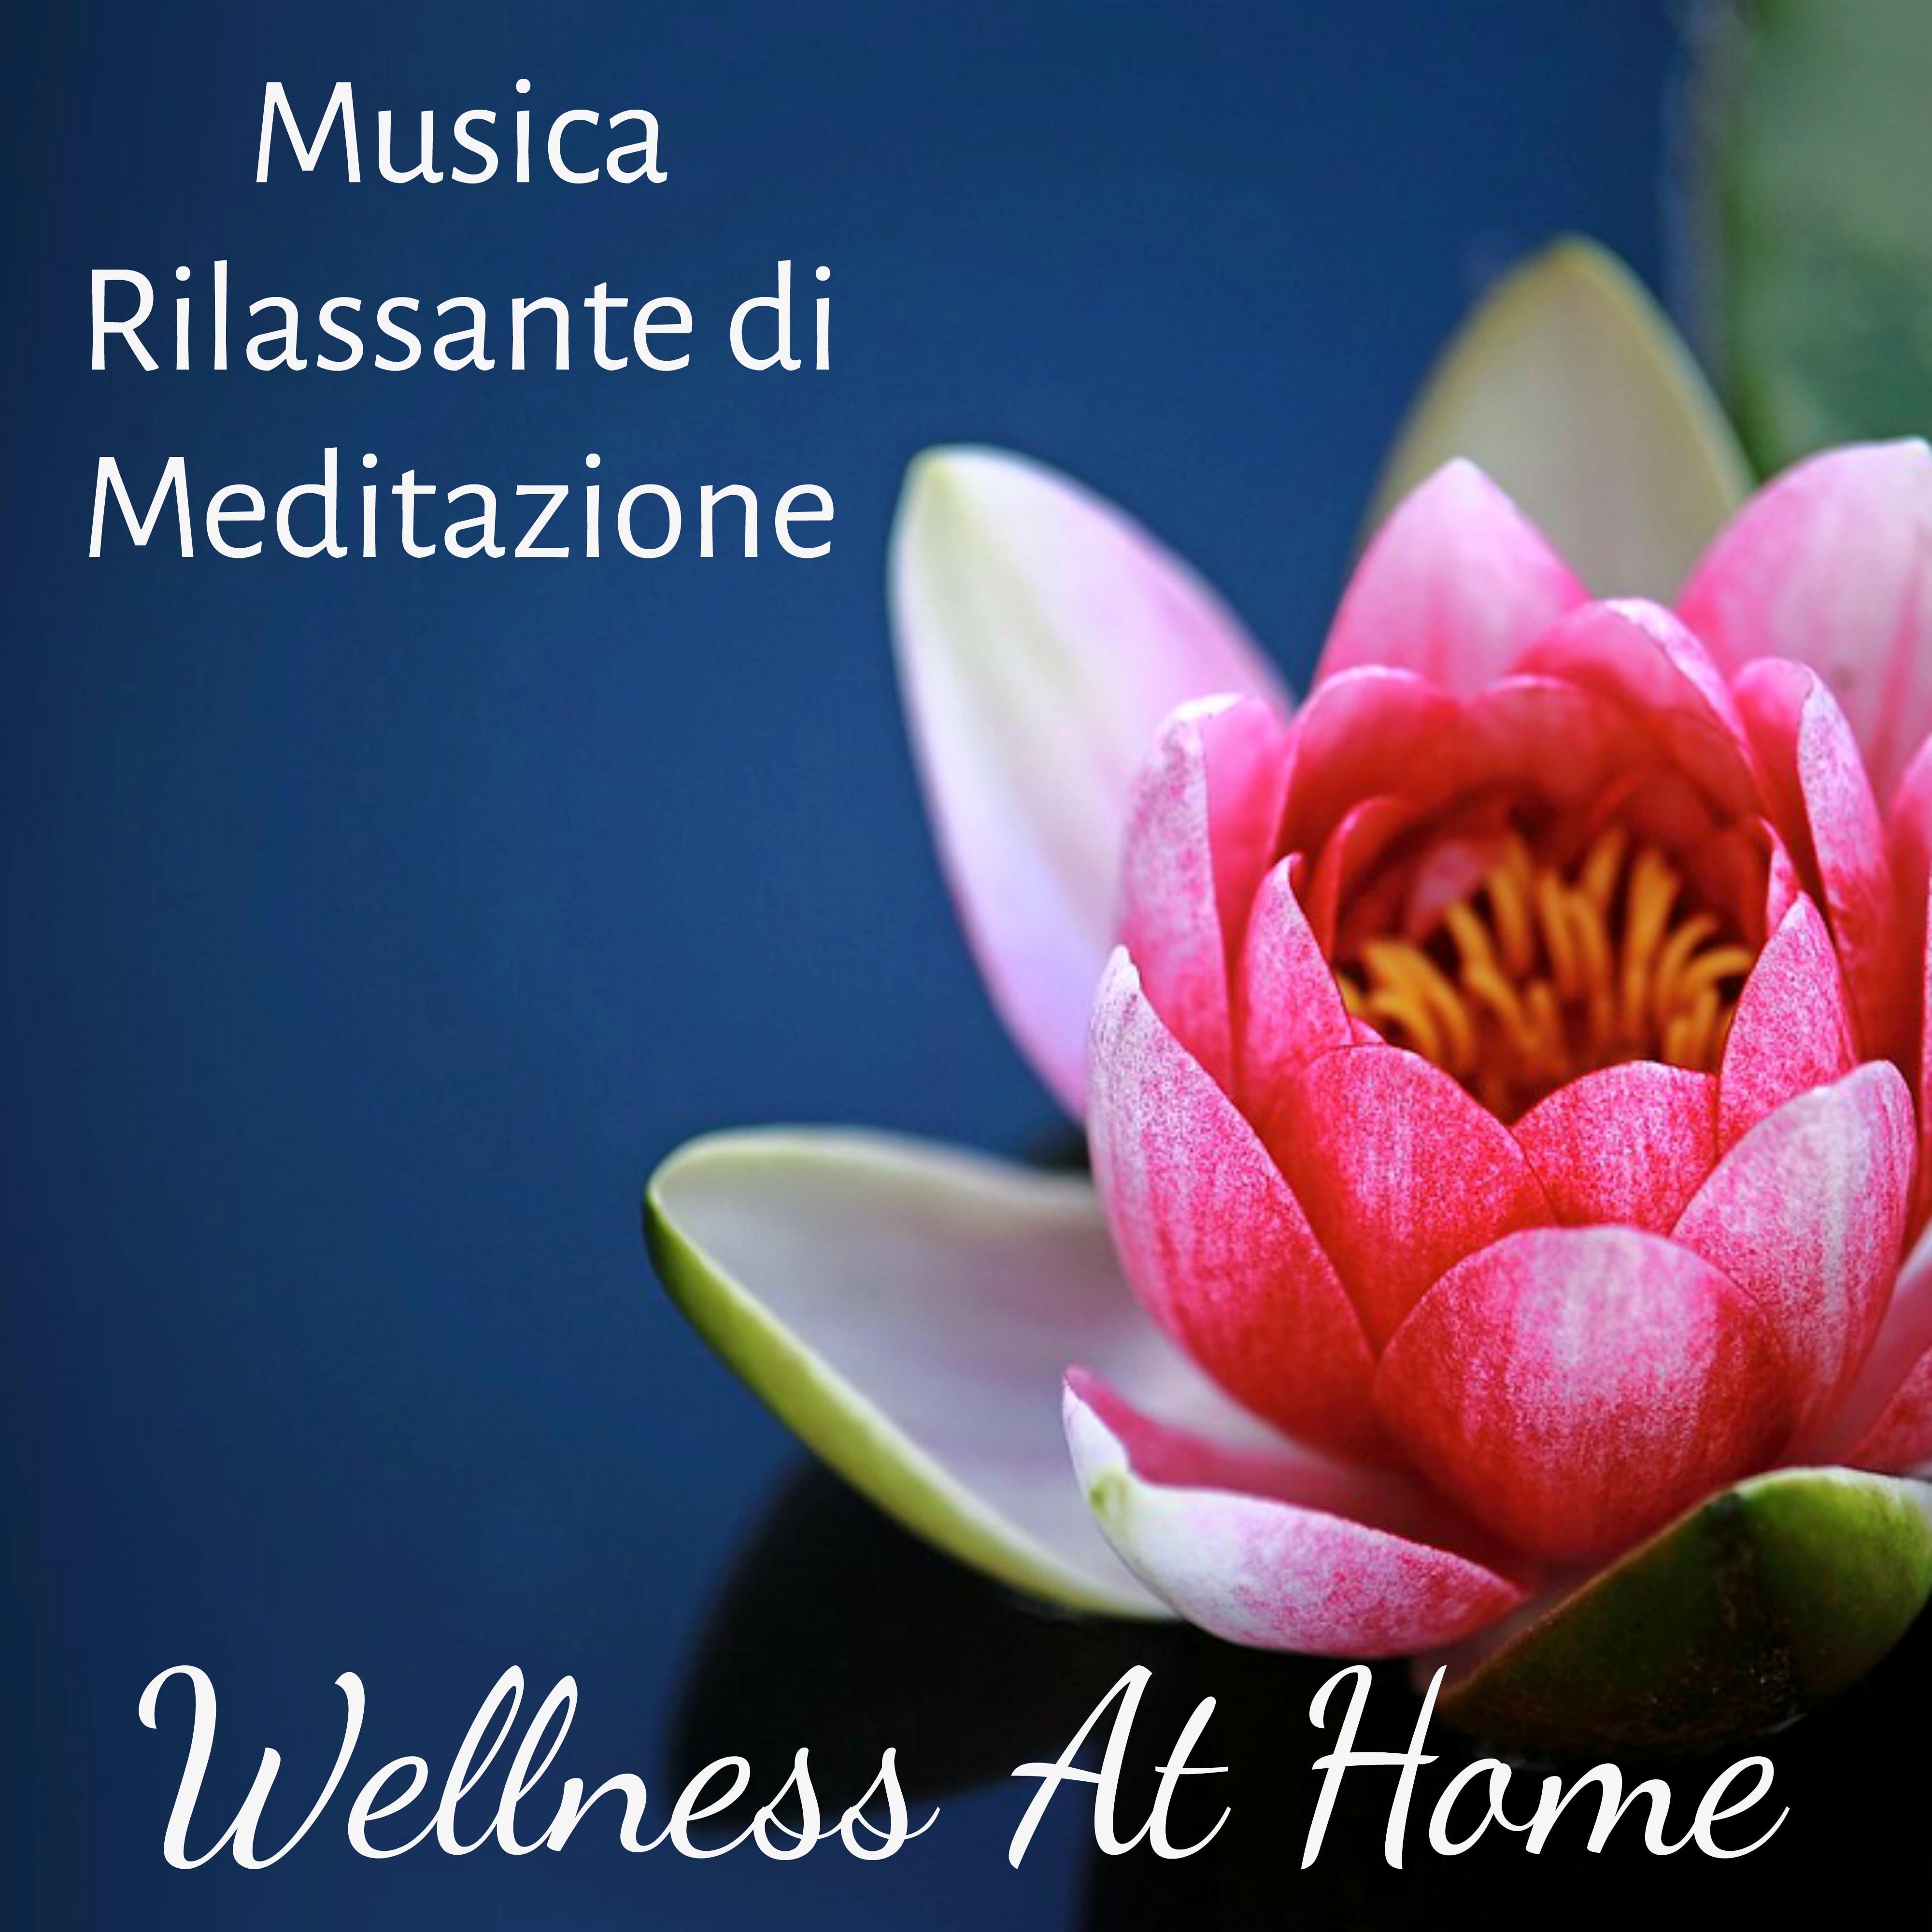 Wellness At Home - Musica Rilassante di Meditazione per Aumentare la Concentrazione Buonumore Dormire Bene